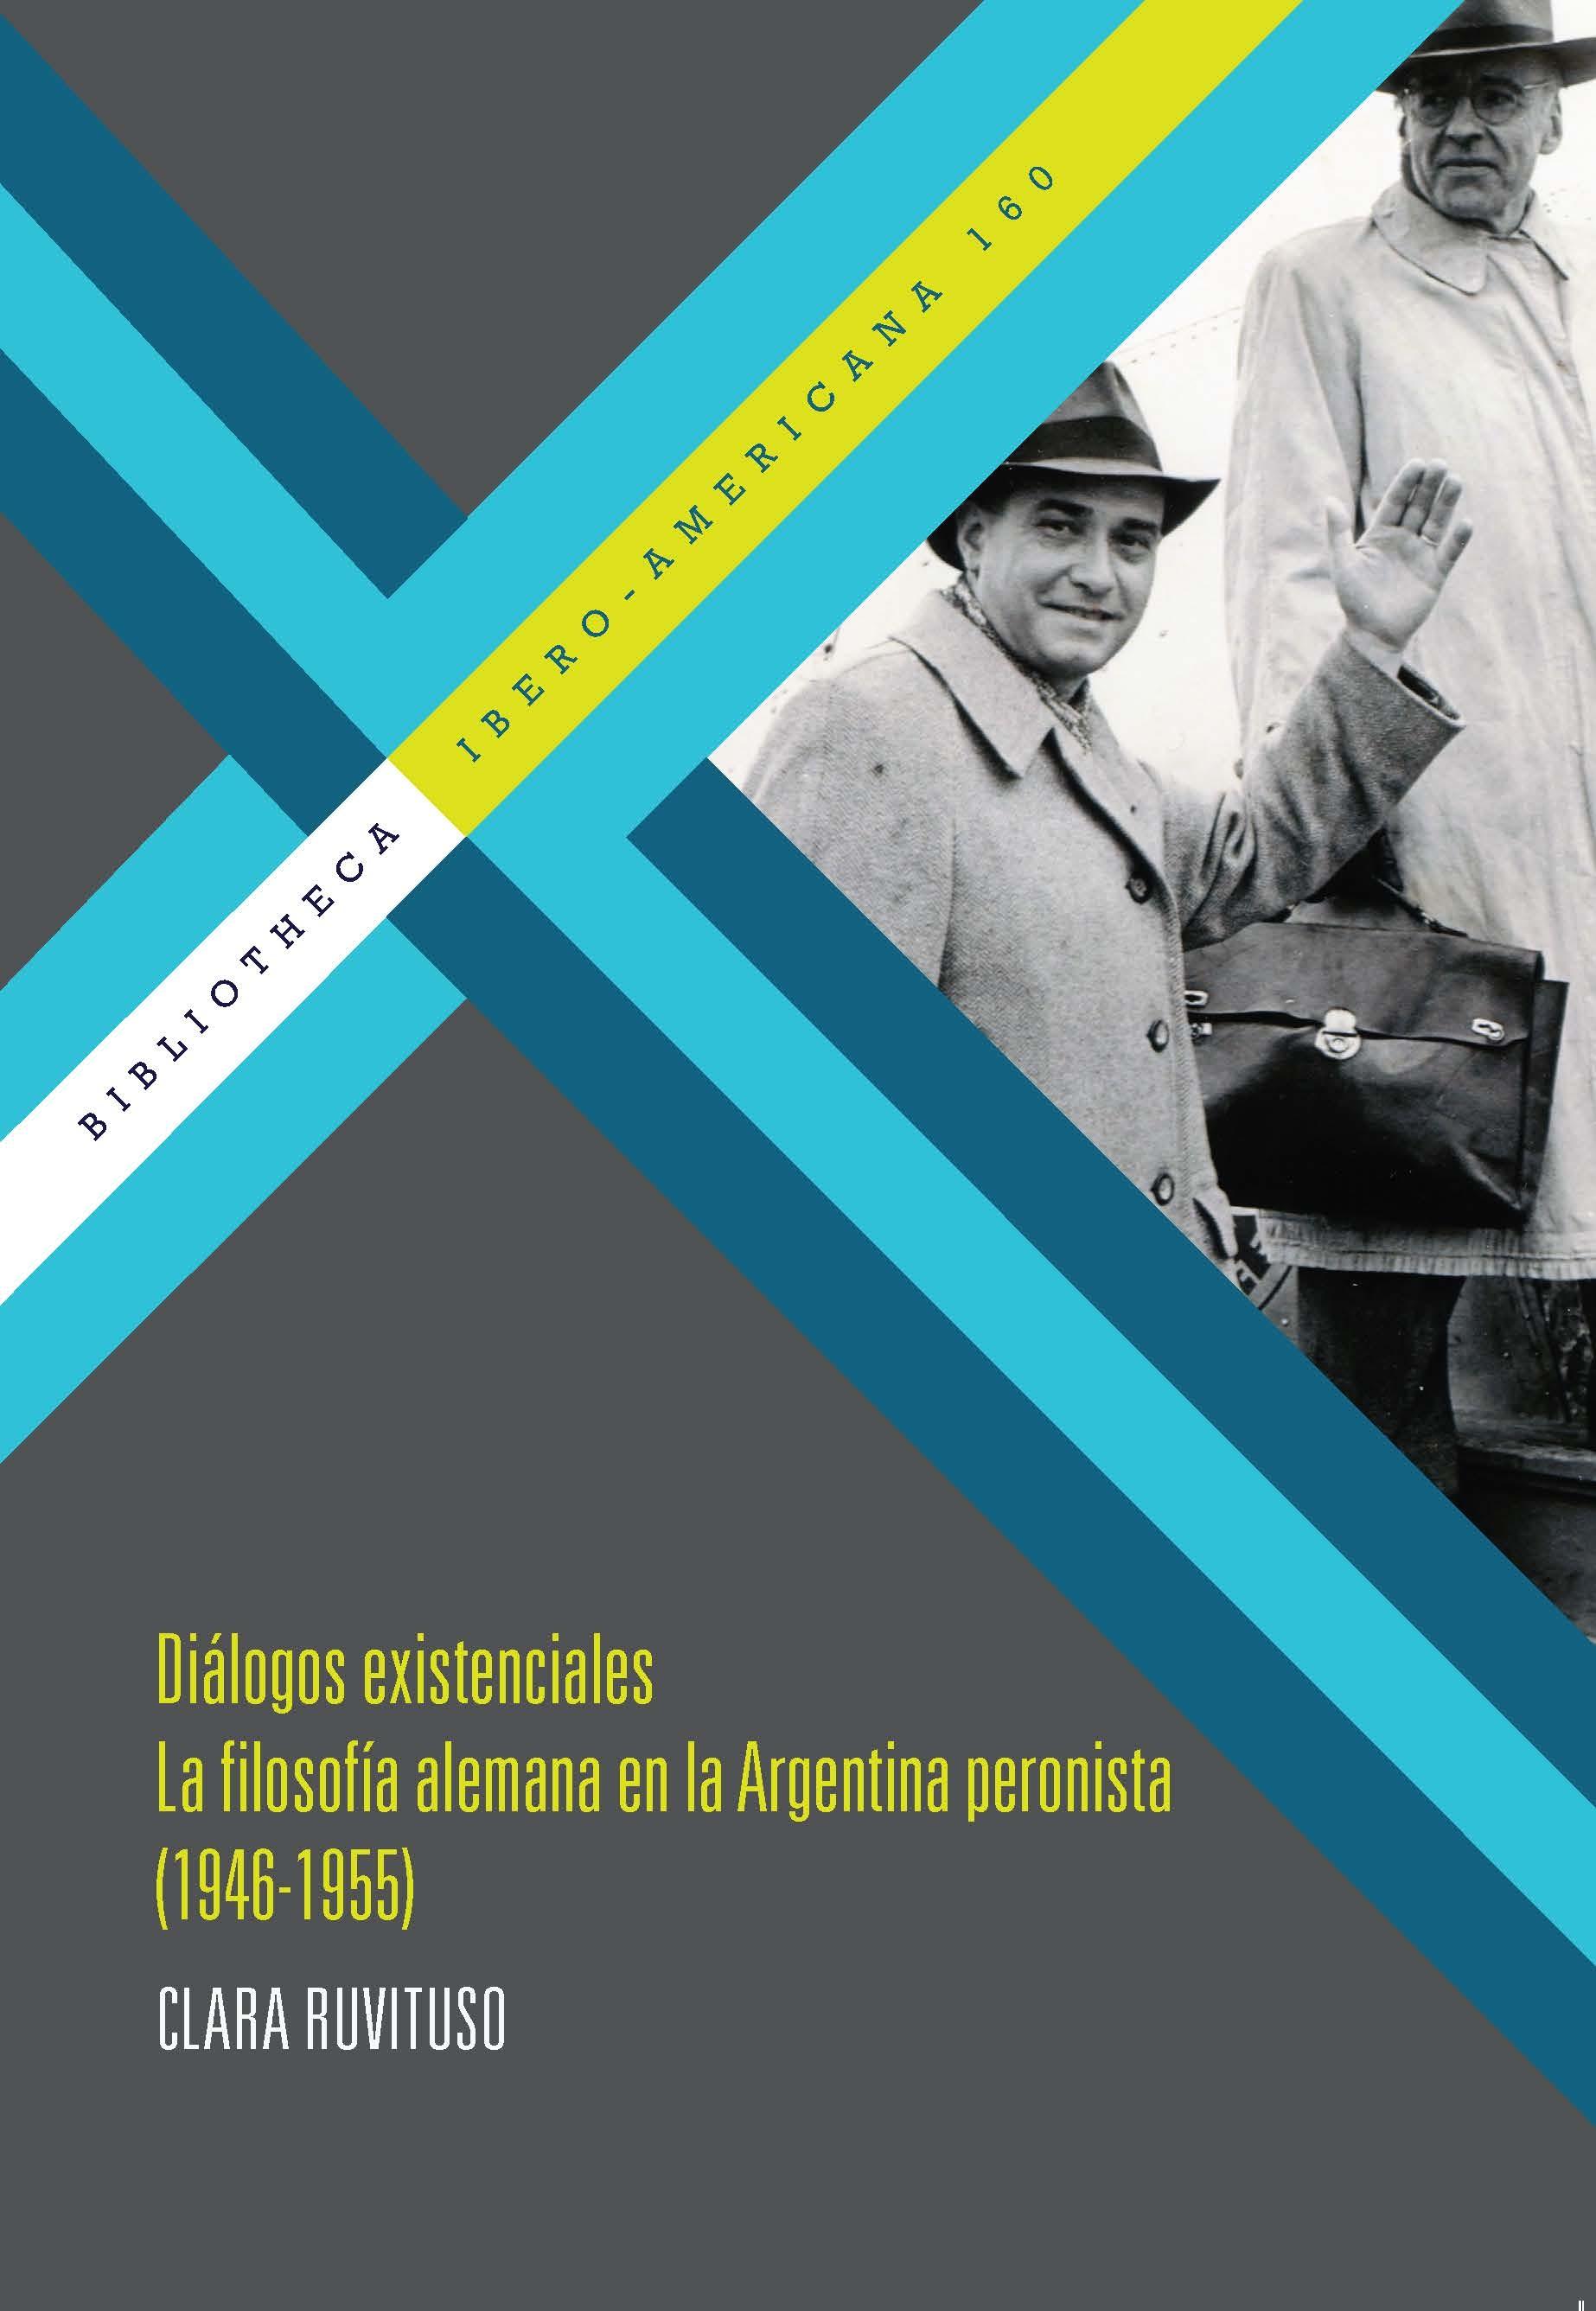 Diálogos existenciales. "La filosofía alemana en la Argentina peronista (1946-1955).". 